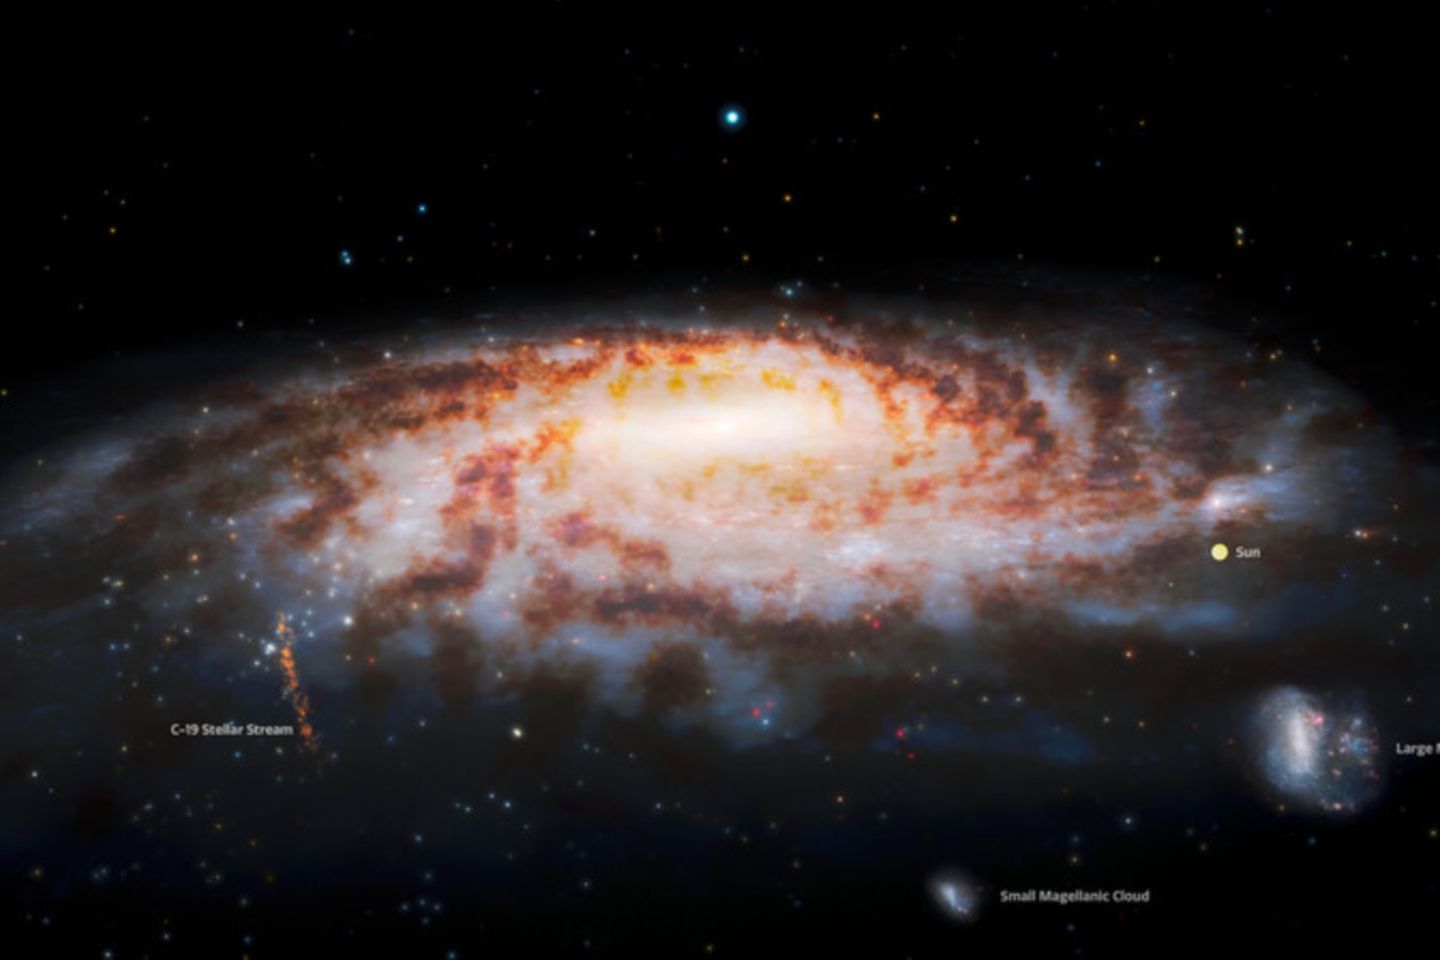 Diese Illustration zeigt die Position des Sternstroms C-19, der kürzlich am Rand unserer Milchstraße entdeckt wurde